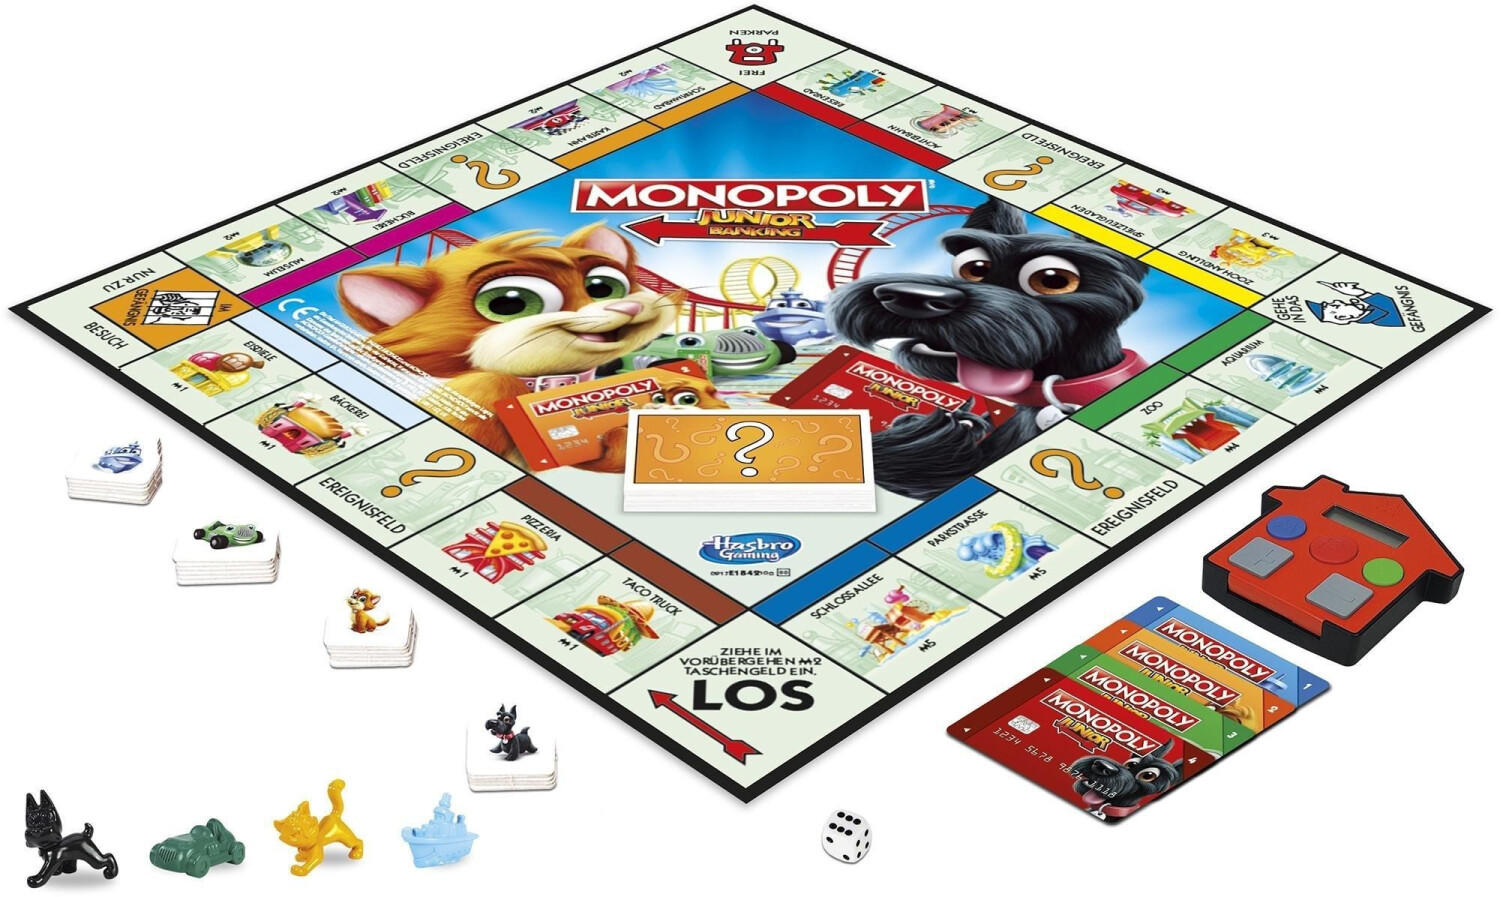 Hasbro Monopoly junior - Jeu de stratégie - Achat & prix